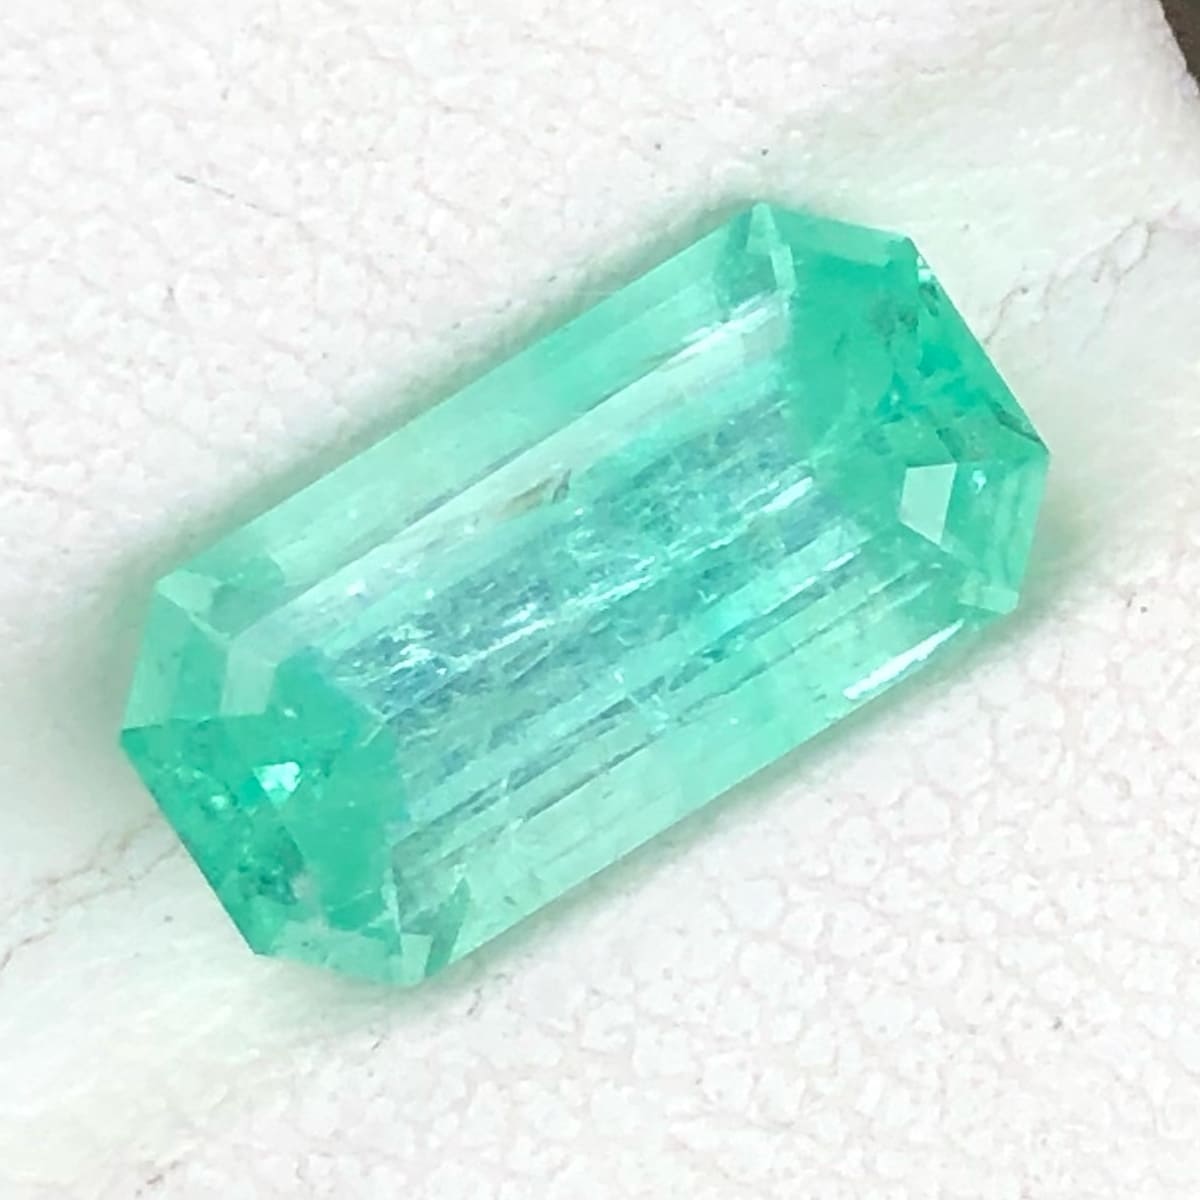 Emerald Cut Emerald